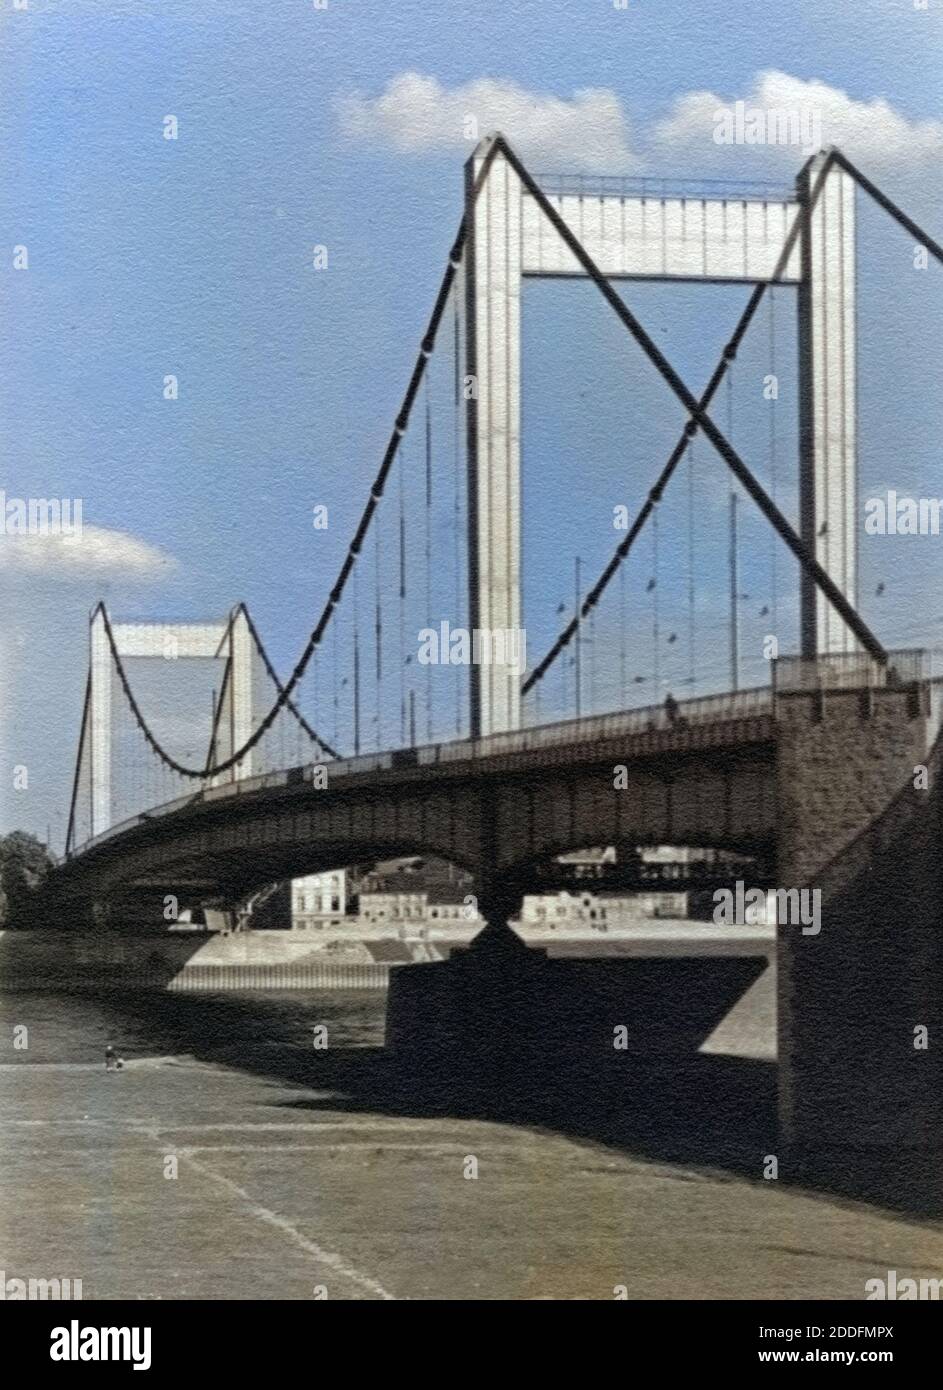 Die Mülheimer Brücke über den Rhein in Köln, Deutschland 1930er Jahre. Muelheimer Bruecke bridge over river Rhine at Cologne, Germany 1930s. Stock Photo